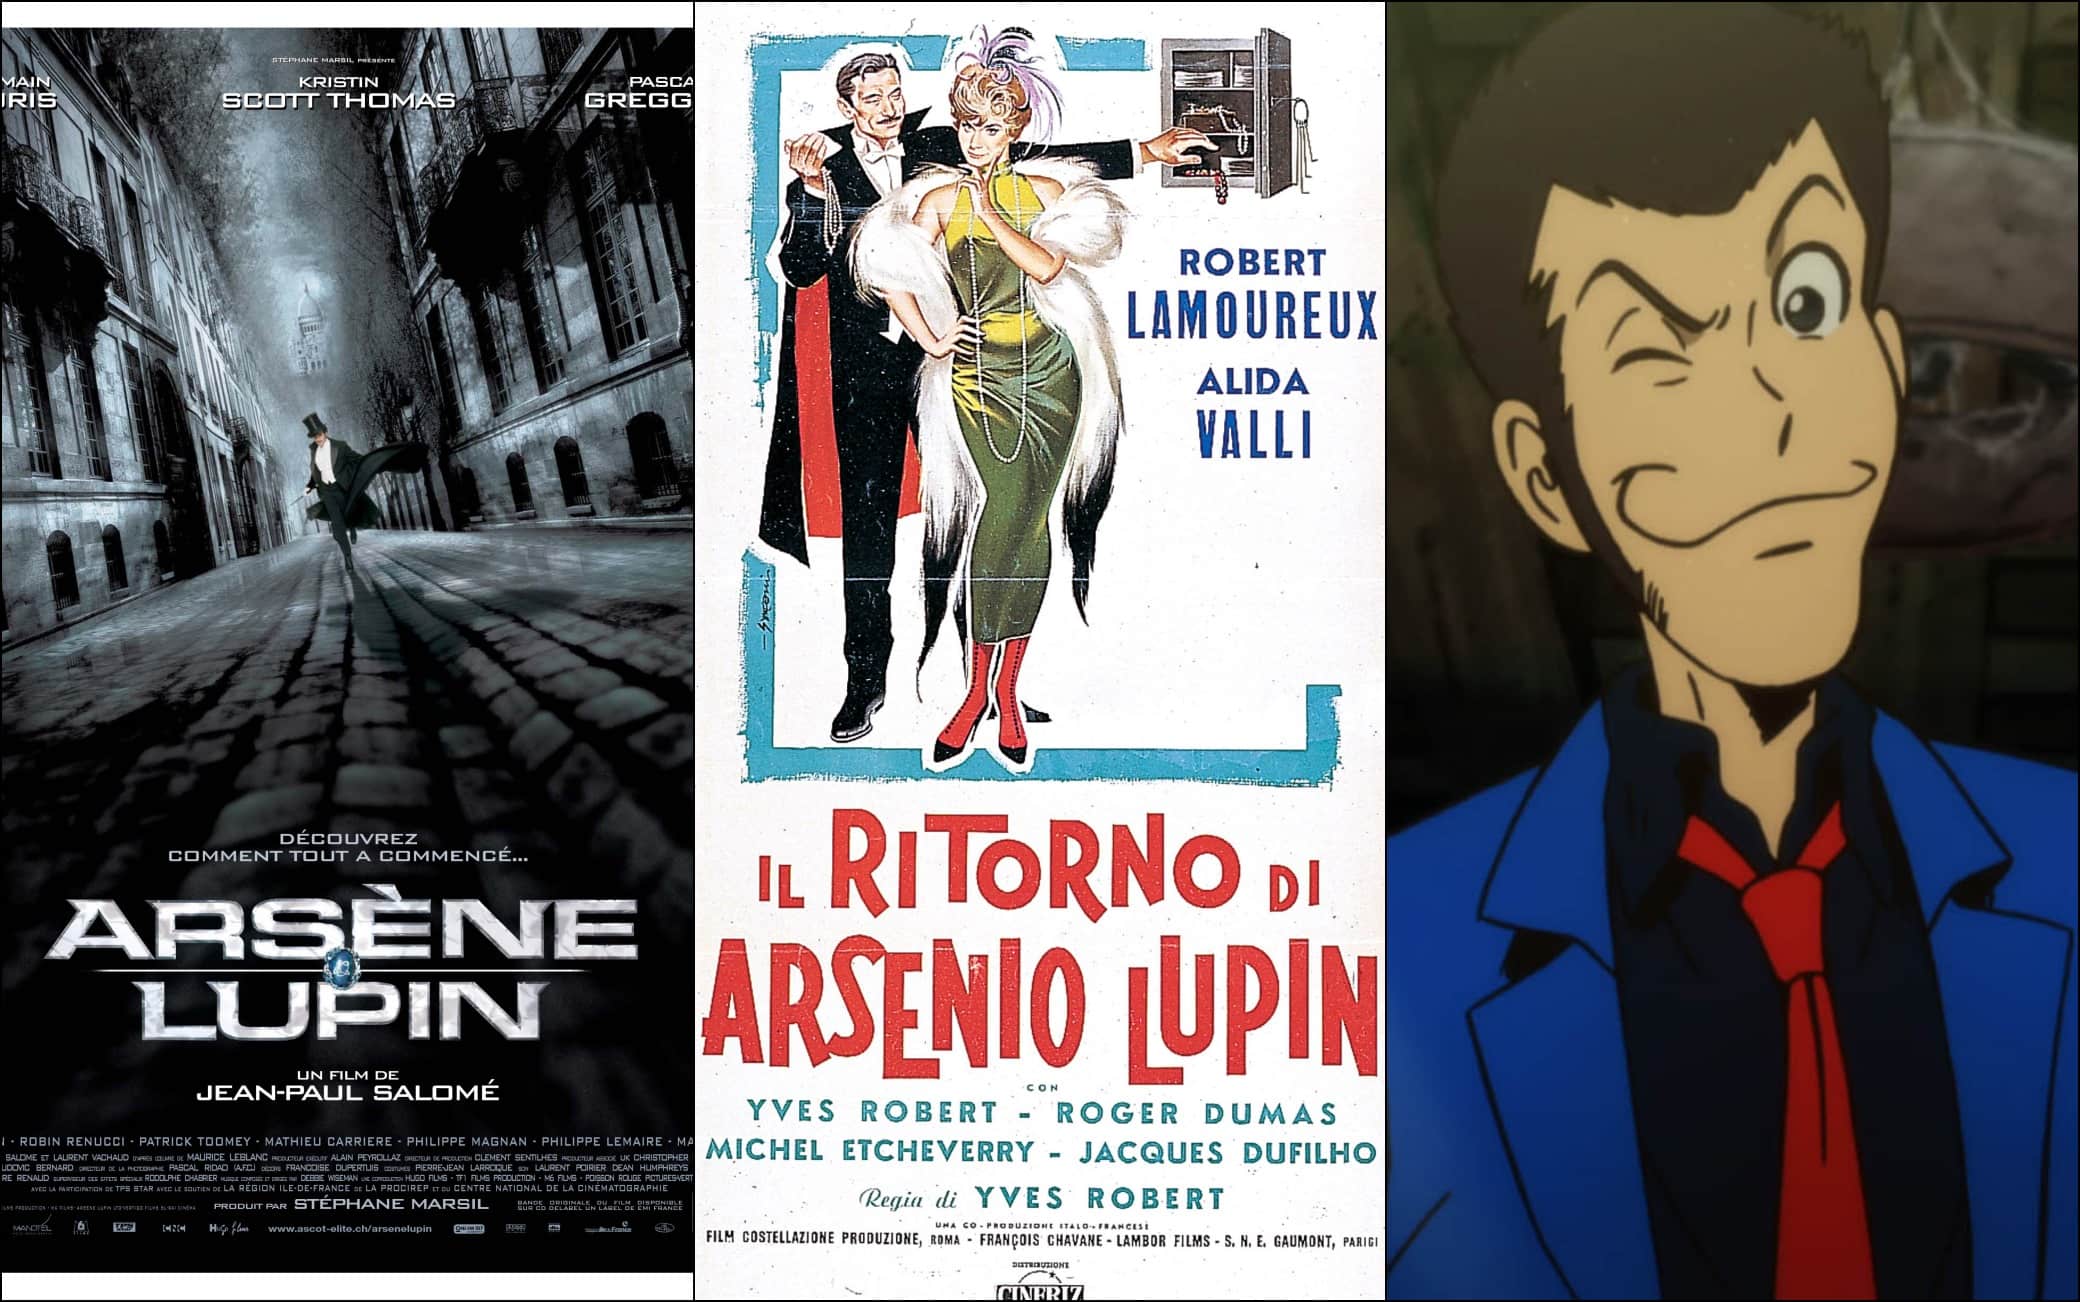 Arsenio Lupin, il ladro più famoso del mondo compie 115 anni. FOTO